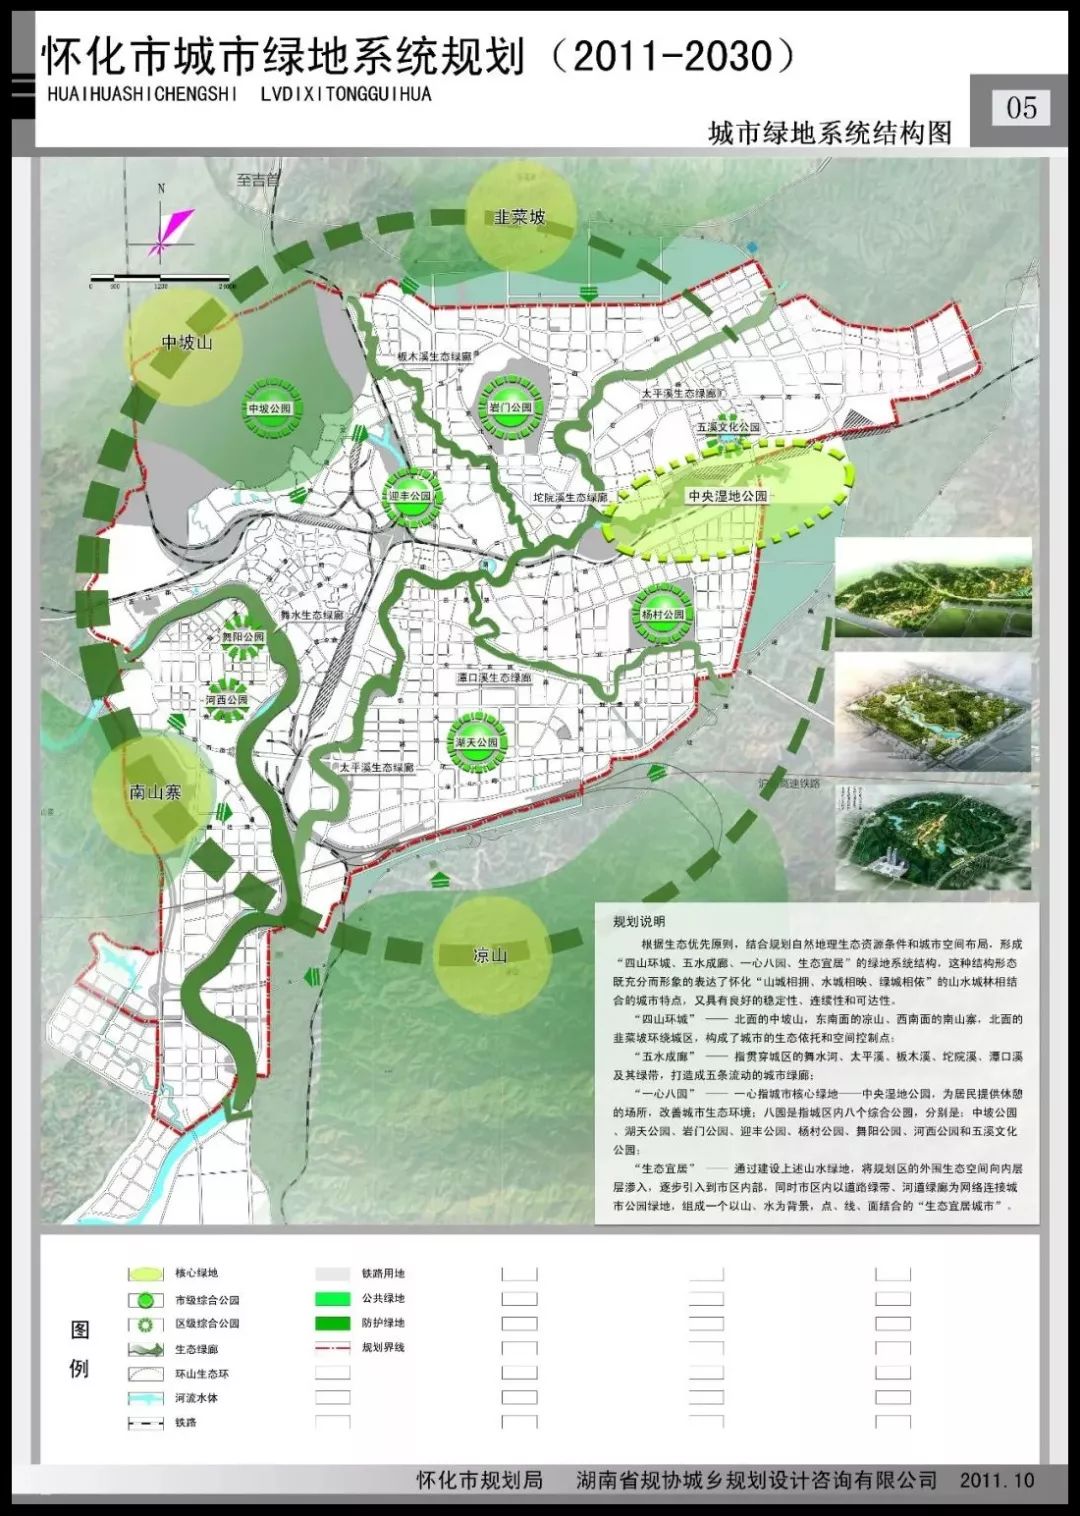 1038绿意更浓环境更美怀化市城市绿地系统规划来了